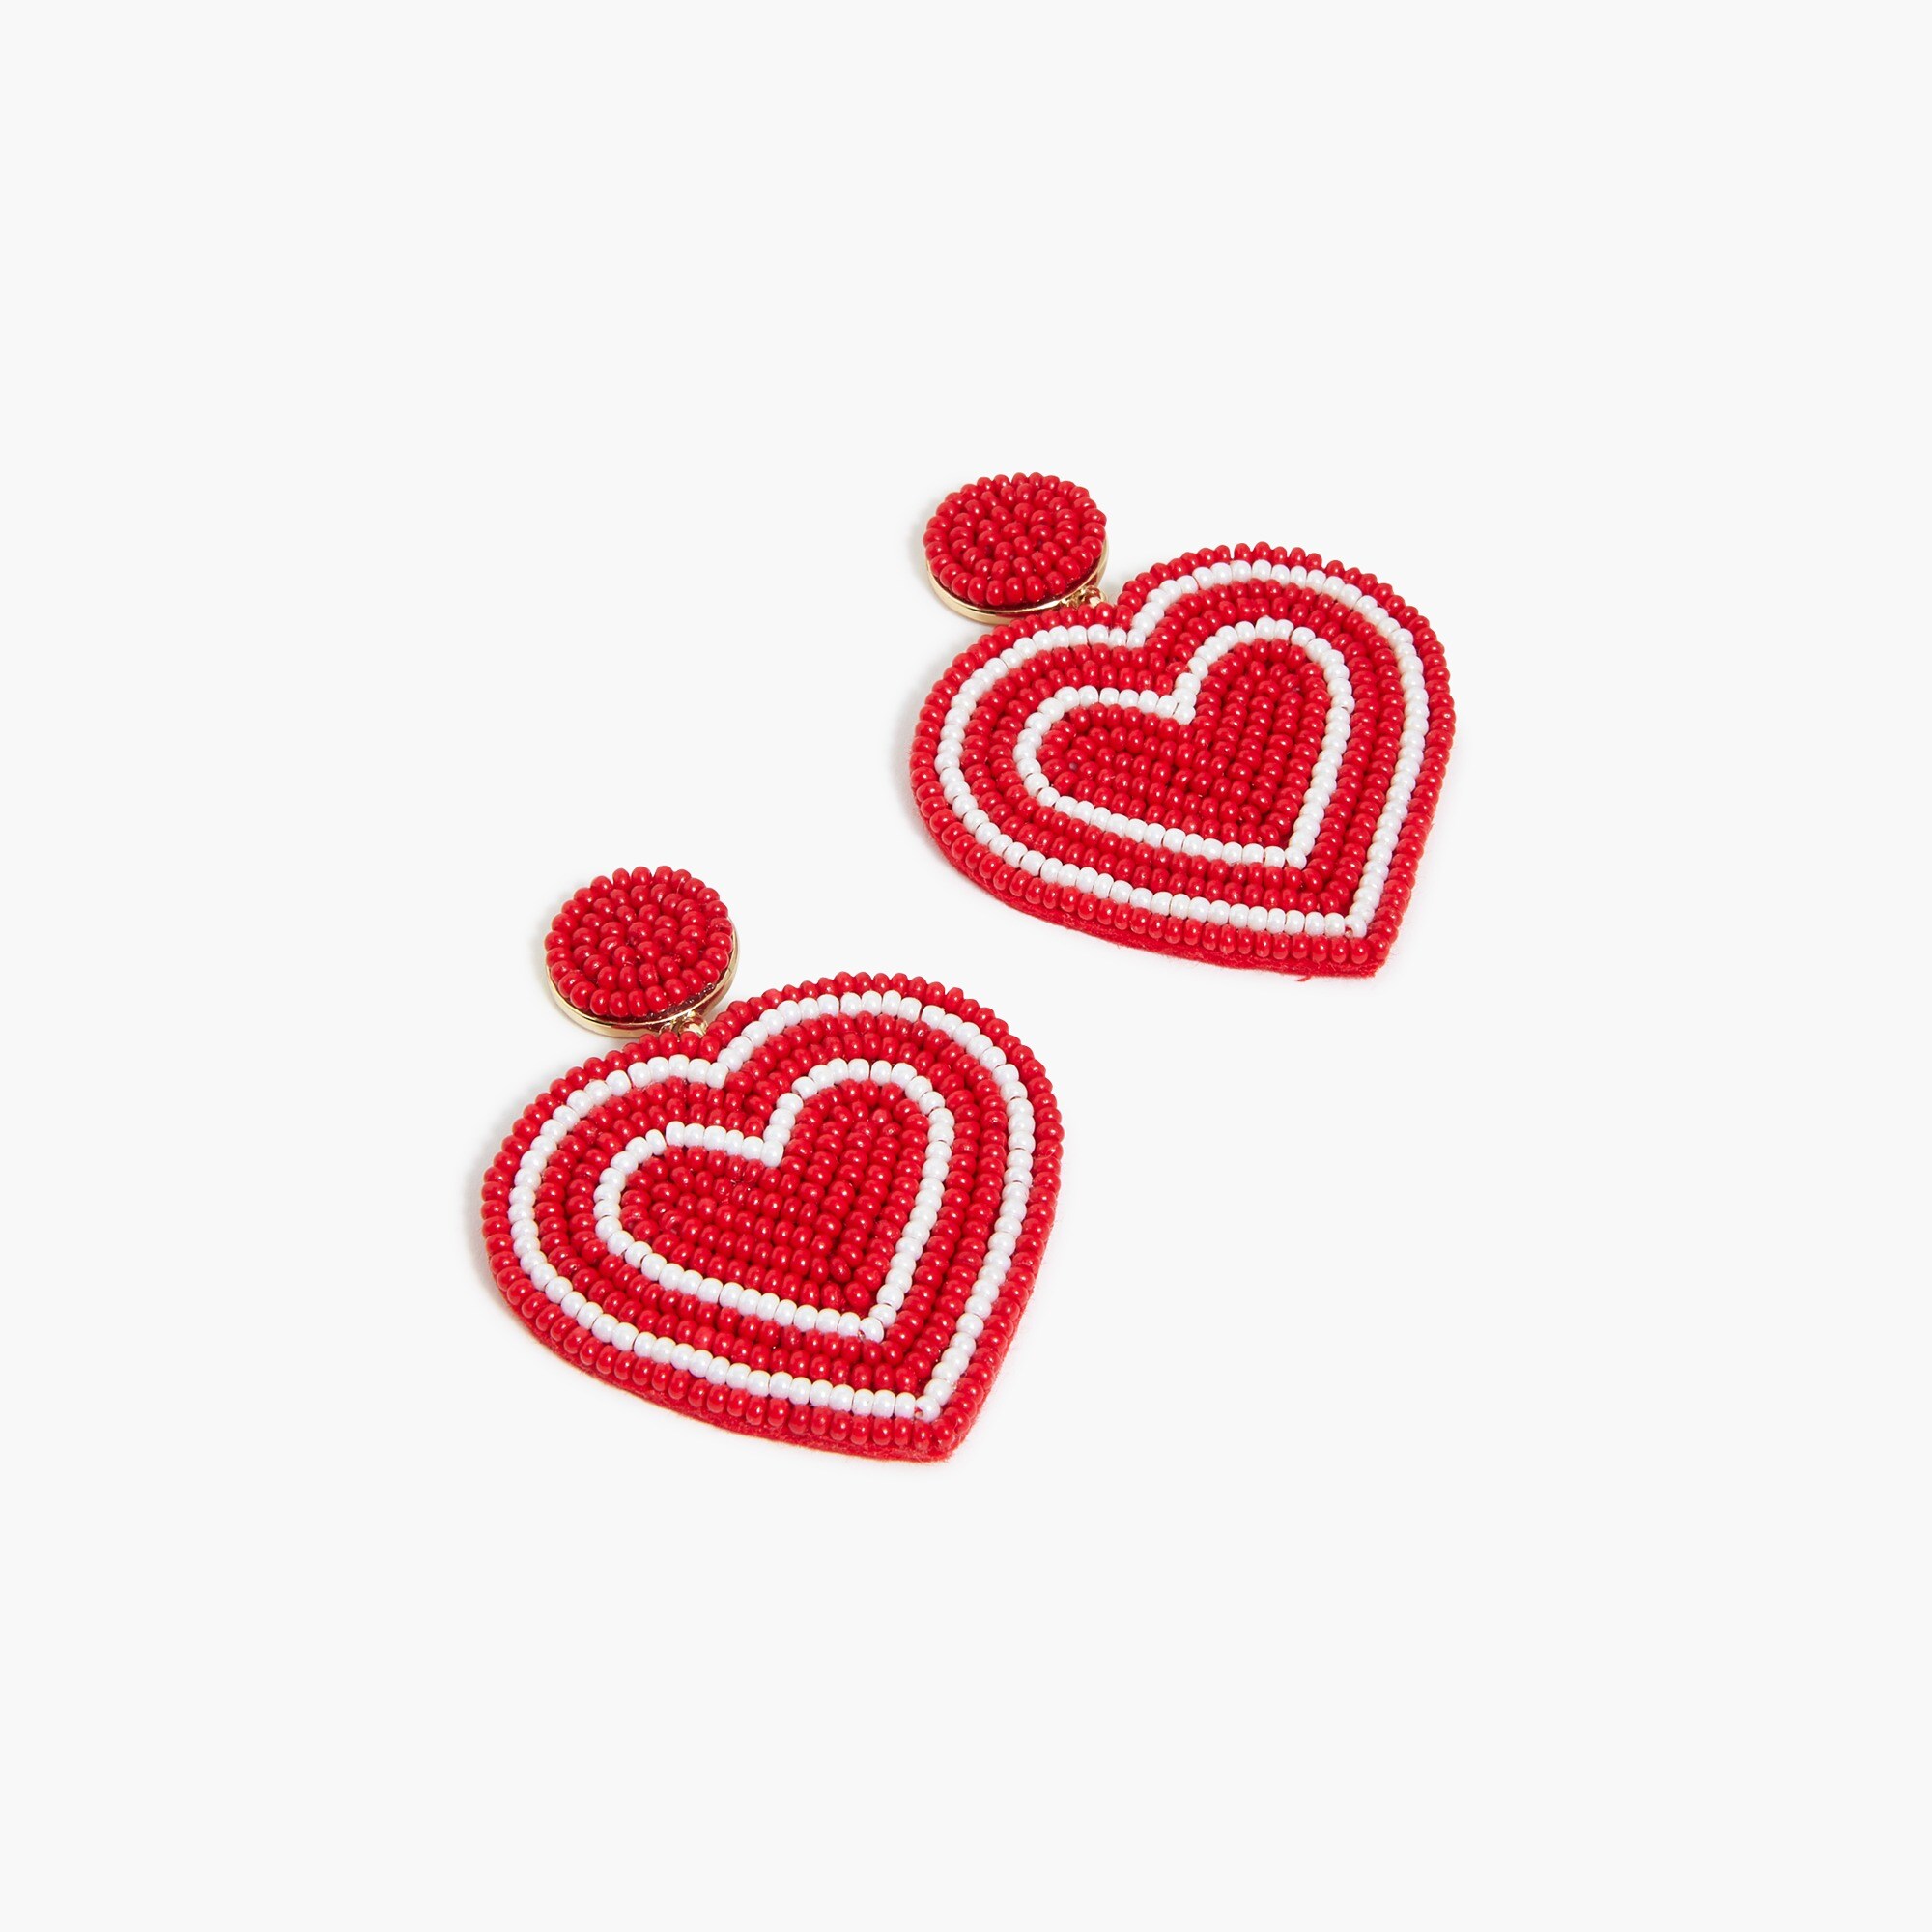  Beaded heart earrings